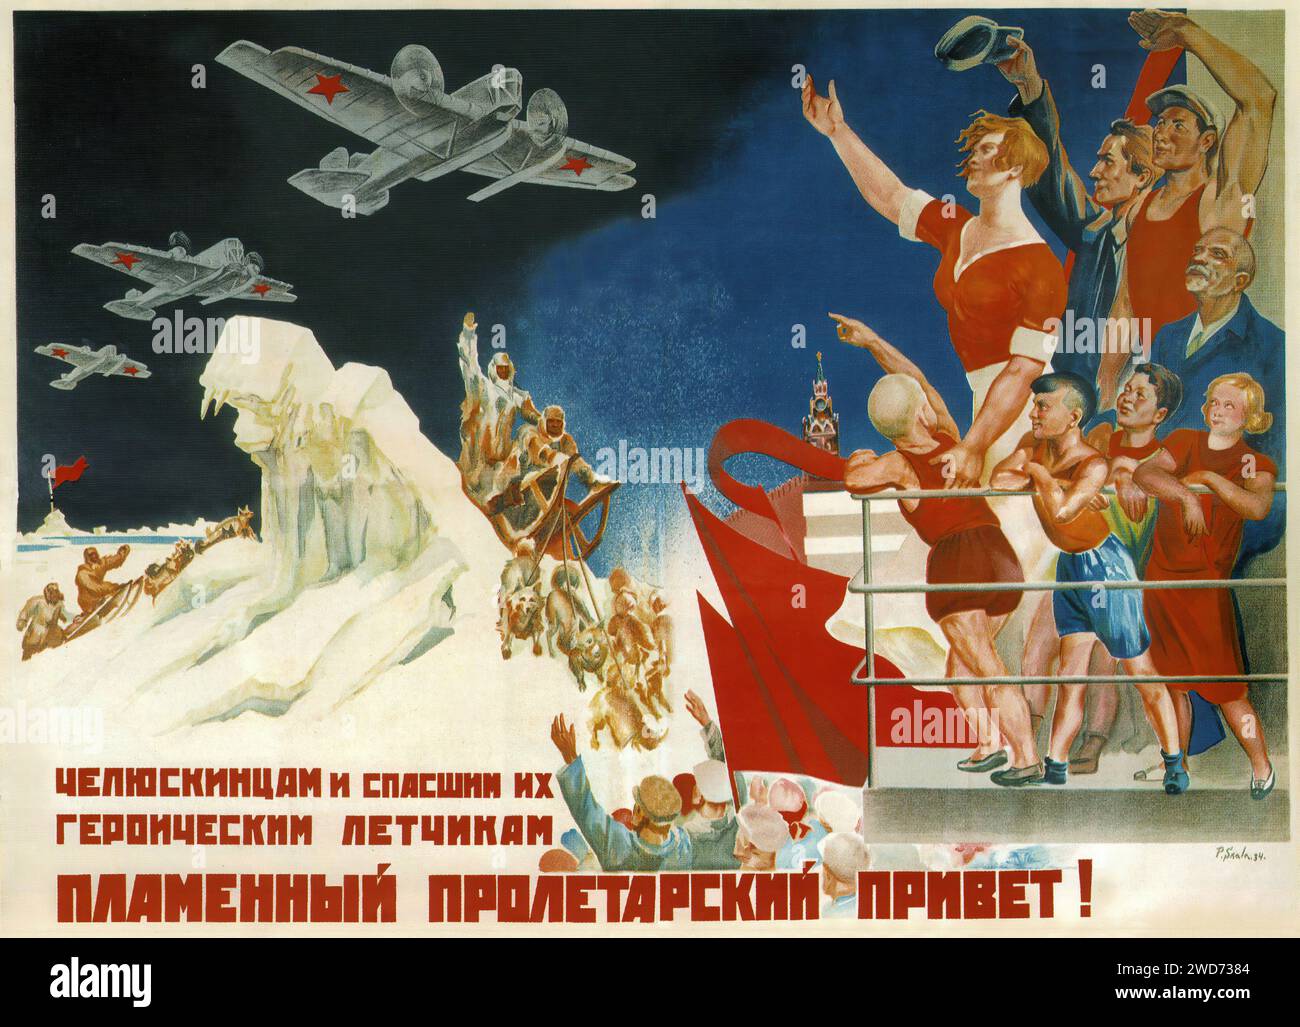 Pavel Sokolov-Skalya, Salutations aux membres de l'expédition de Chelyouskine et aux aviateurs qui les ont sauvés. 1934 - Publicité et propagande soviétiques vintage - 'POUR LES GENS ET LES CHIENS DES PILOTES HÉROÏQUES Un SALUT PROLÉTARIEN MÉMORABLE!' Description : l'affiche représente une scène de célébration avec une foule de personnes et de chiens acclamant les pilotes soviétiques volant au-dessus. L'imagerie comprend des références à l'alpinisme et à l'iconographie soviétique, avec un accent sur l'héroïsme et la fierté collective. Le style est dynamique et festif, avec des couleurs vibrantes et du mouvement, reflétant l'énergie et l'optimisme de l'époque. Pilotes soviétiques Banque D'Images